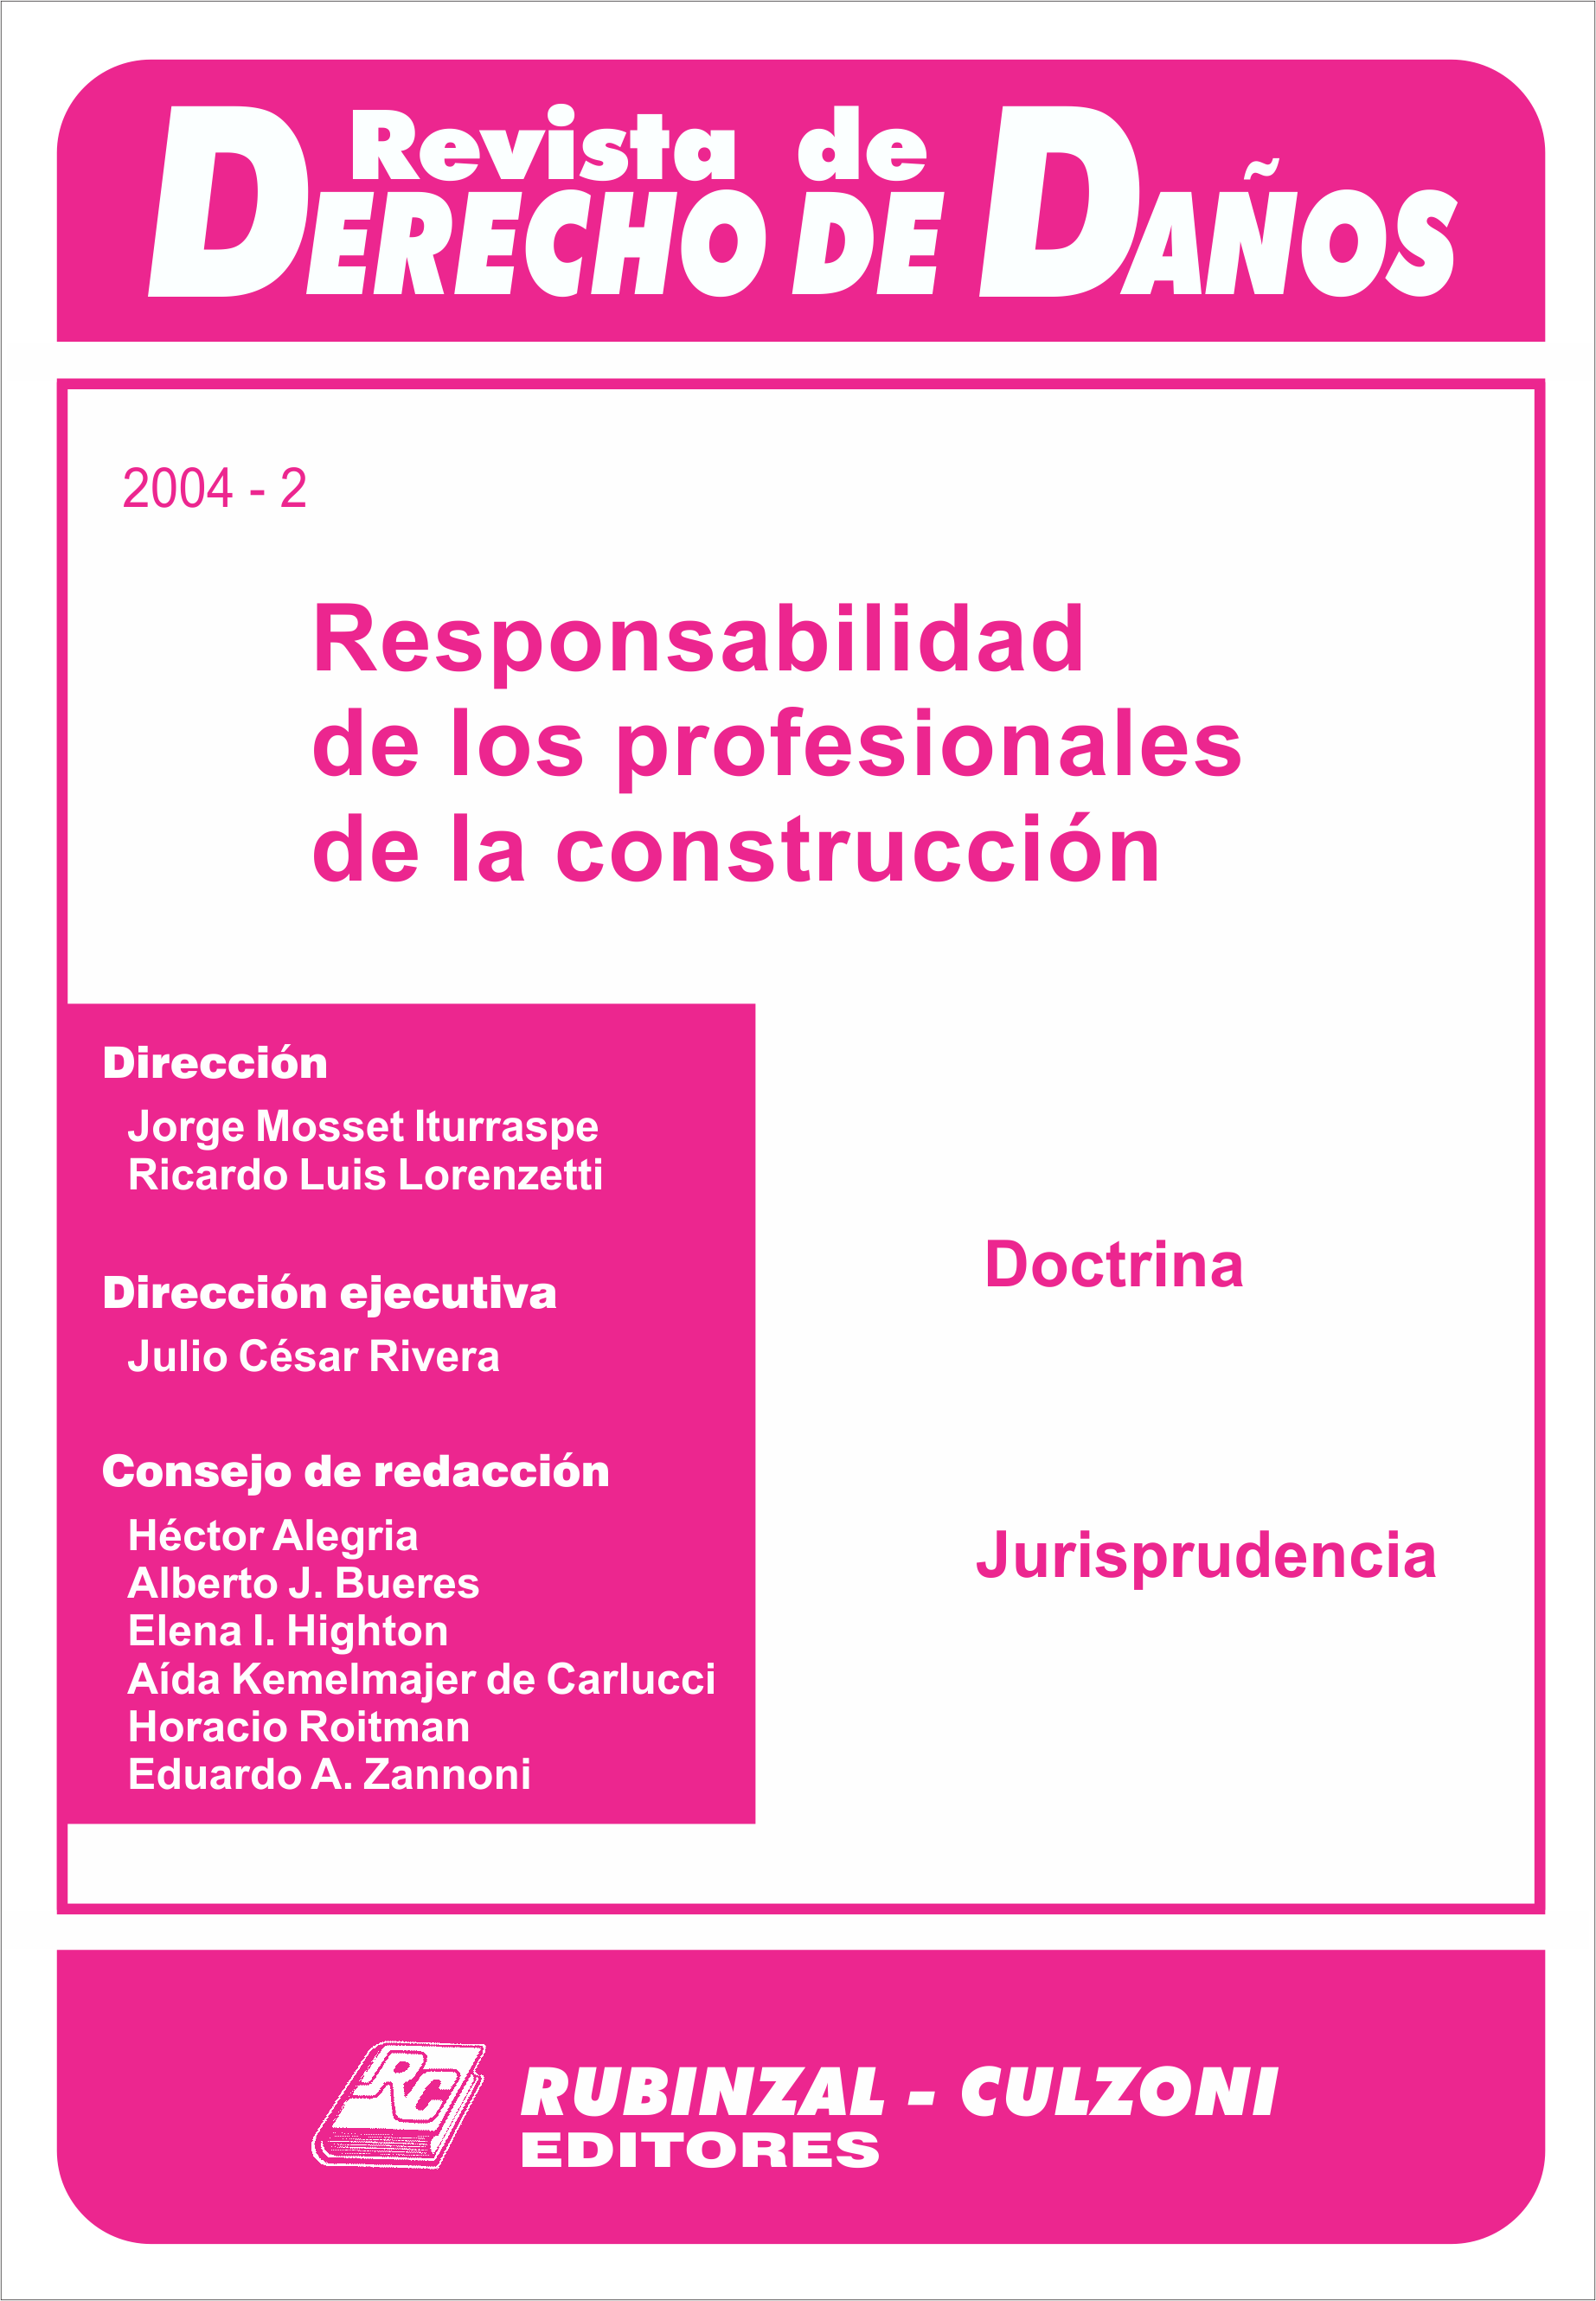 Responsabilidad de los profesionales de la construcción. [2004-2]